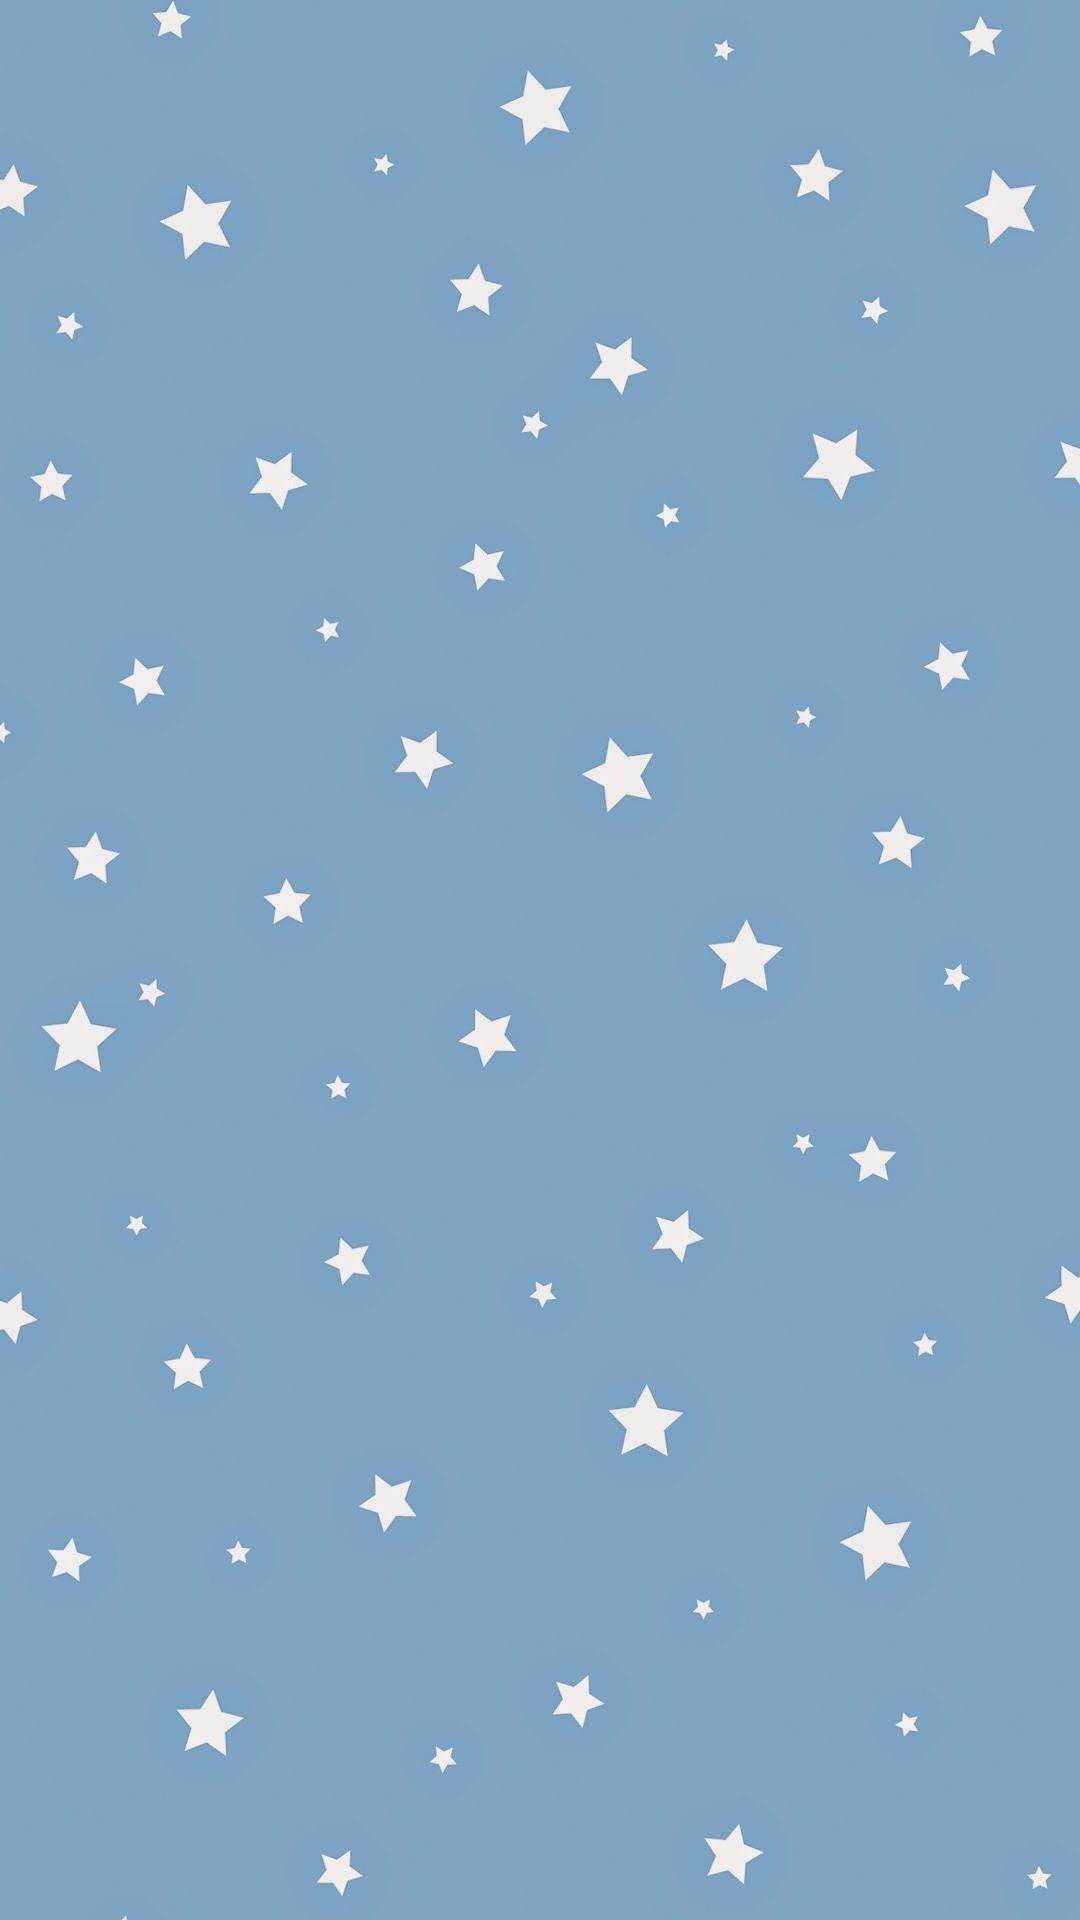 Aesthetic Star Wallpaper Free Aesthetic Star Background